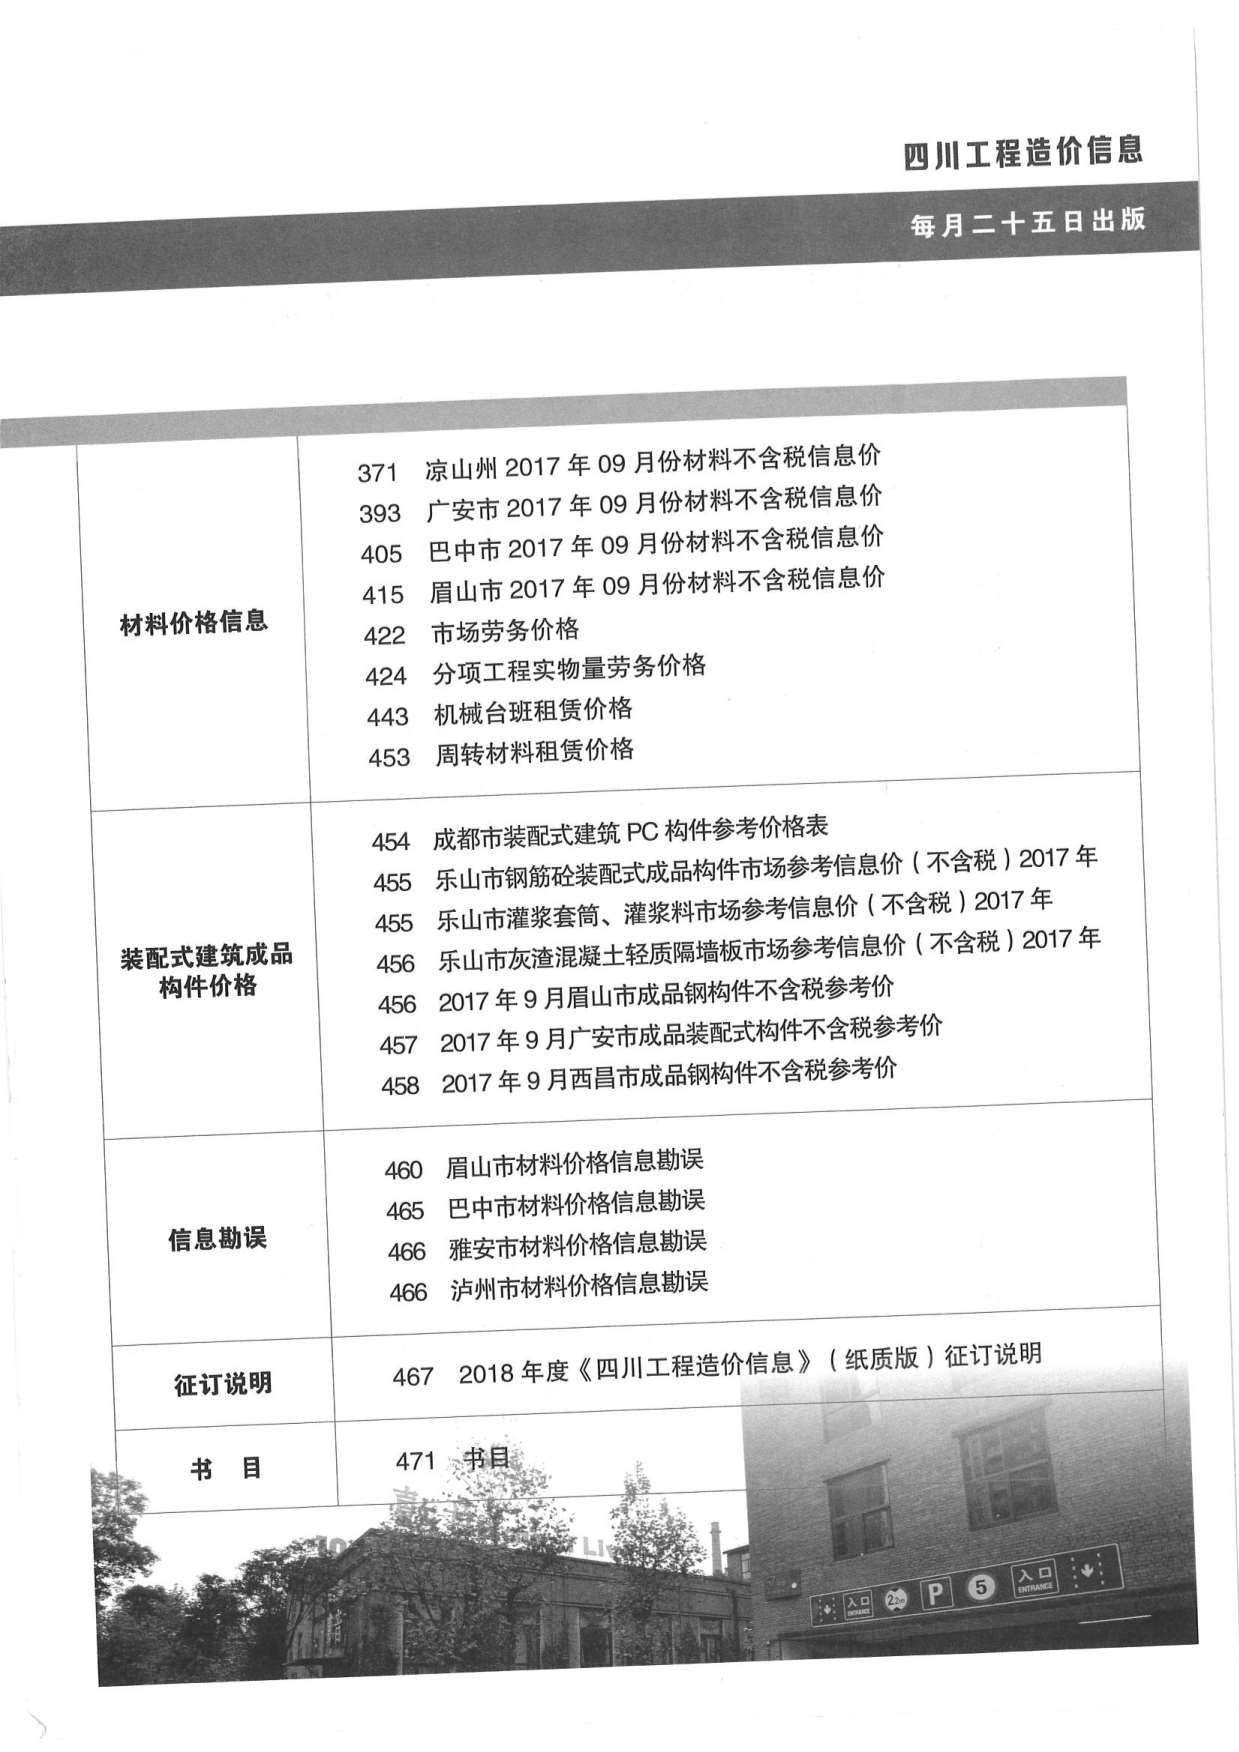 四川省2017年10月工程造价信息价